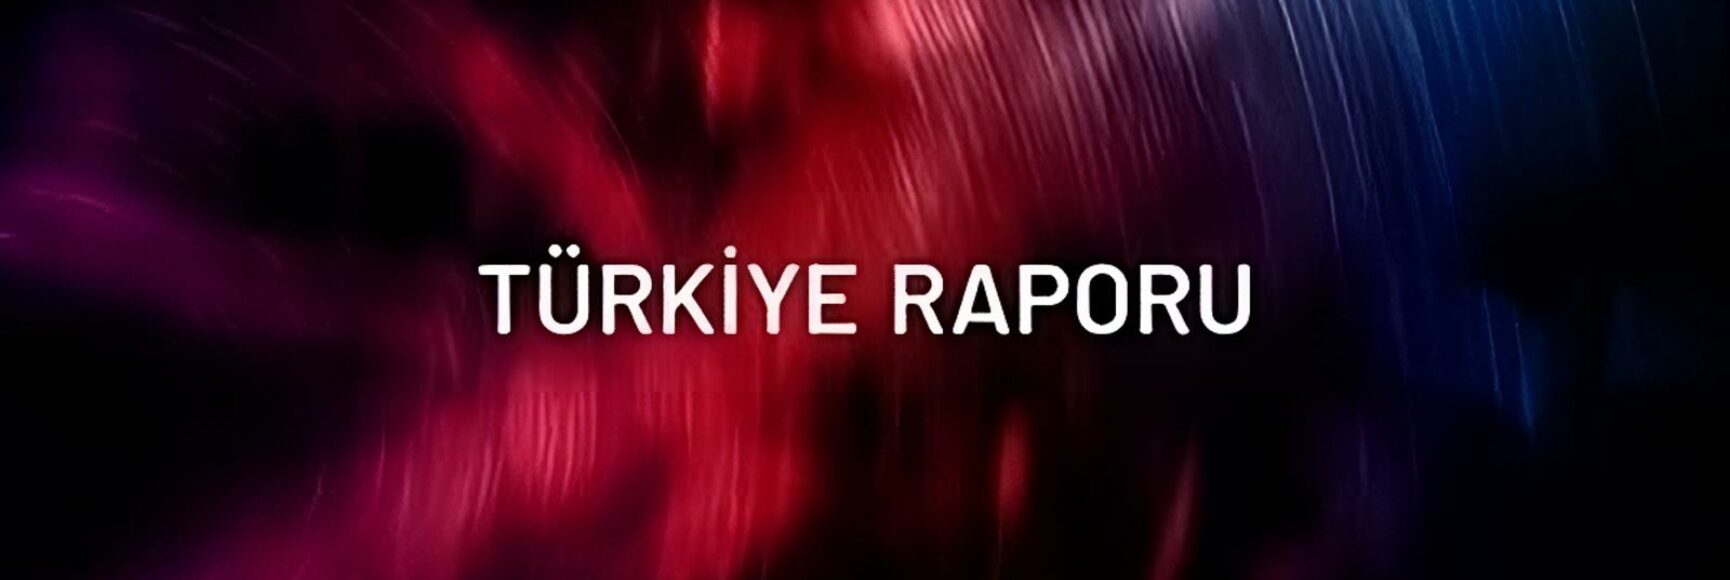 Turkiye-Raporu